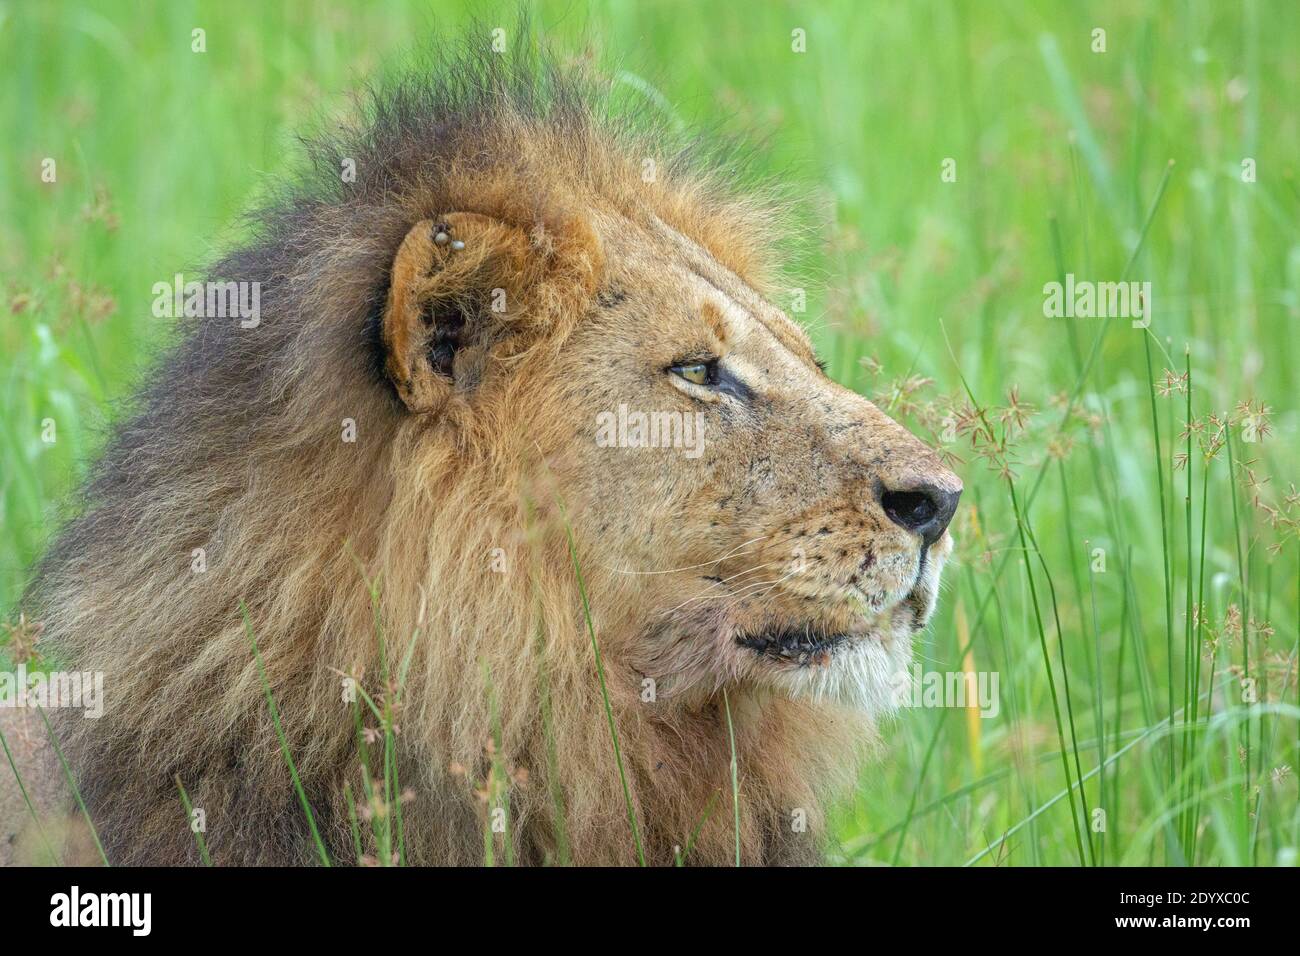 Lion africain (Panthera leo). Vue latérale de la tête avec des parasites externes, des tiques, attachés, intégrés, dans le bord de l'oreille. Banque D'Images